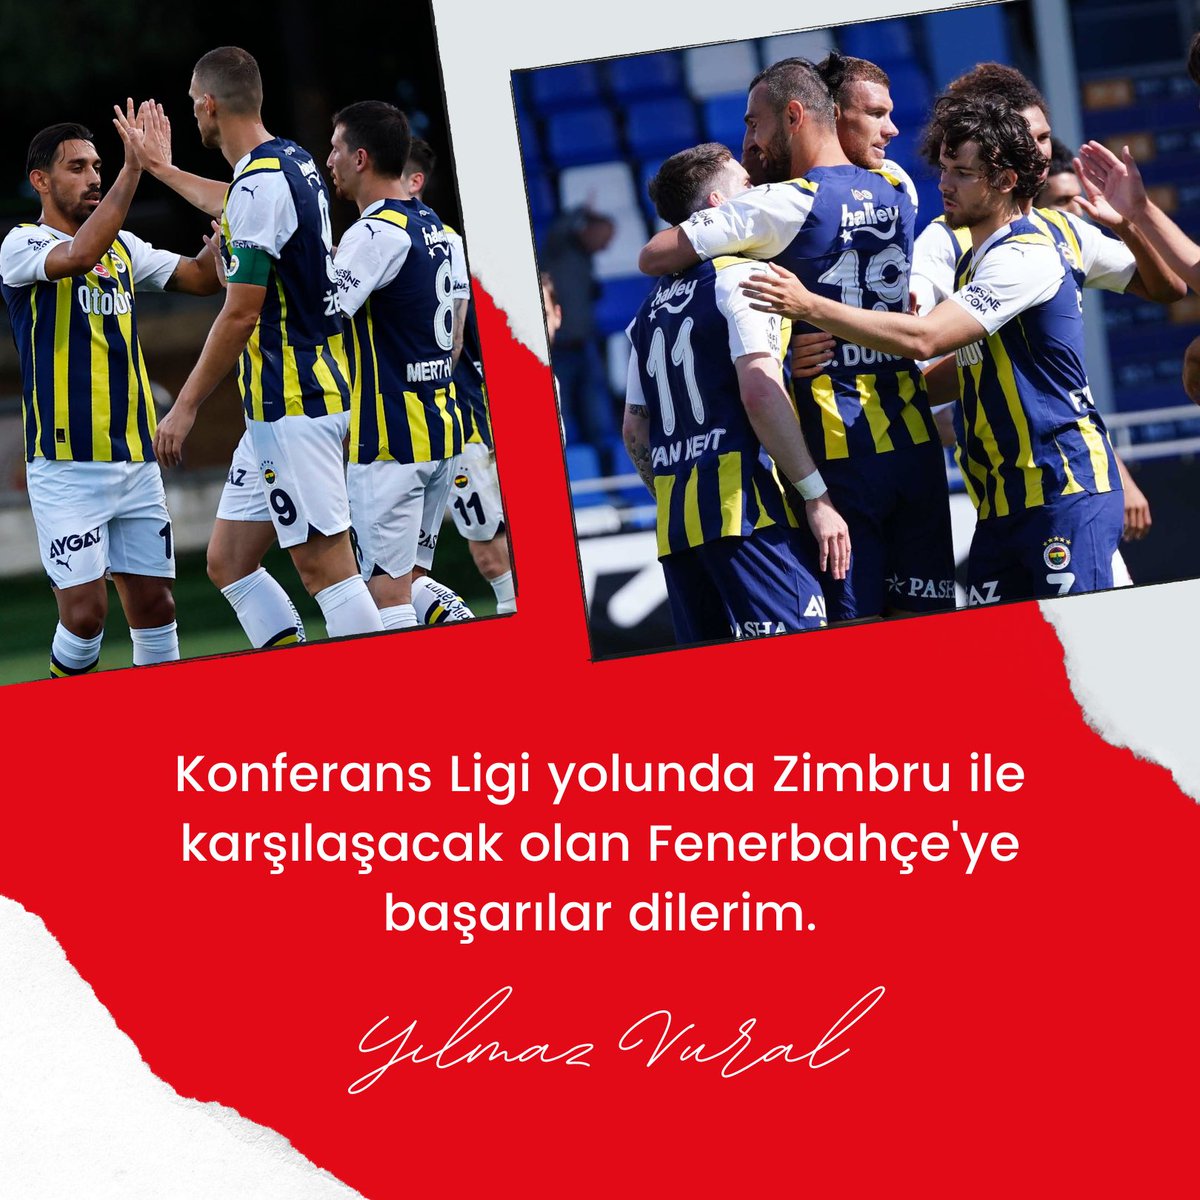 Avrupa Konferans Ligi yolunda Fenerbahçe'ye başarılar dilerim.